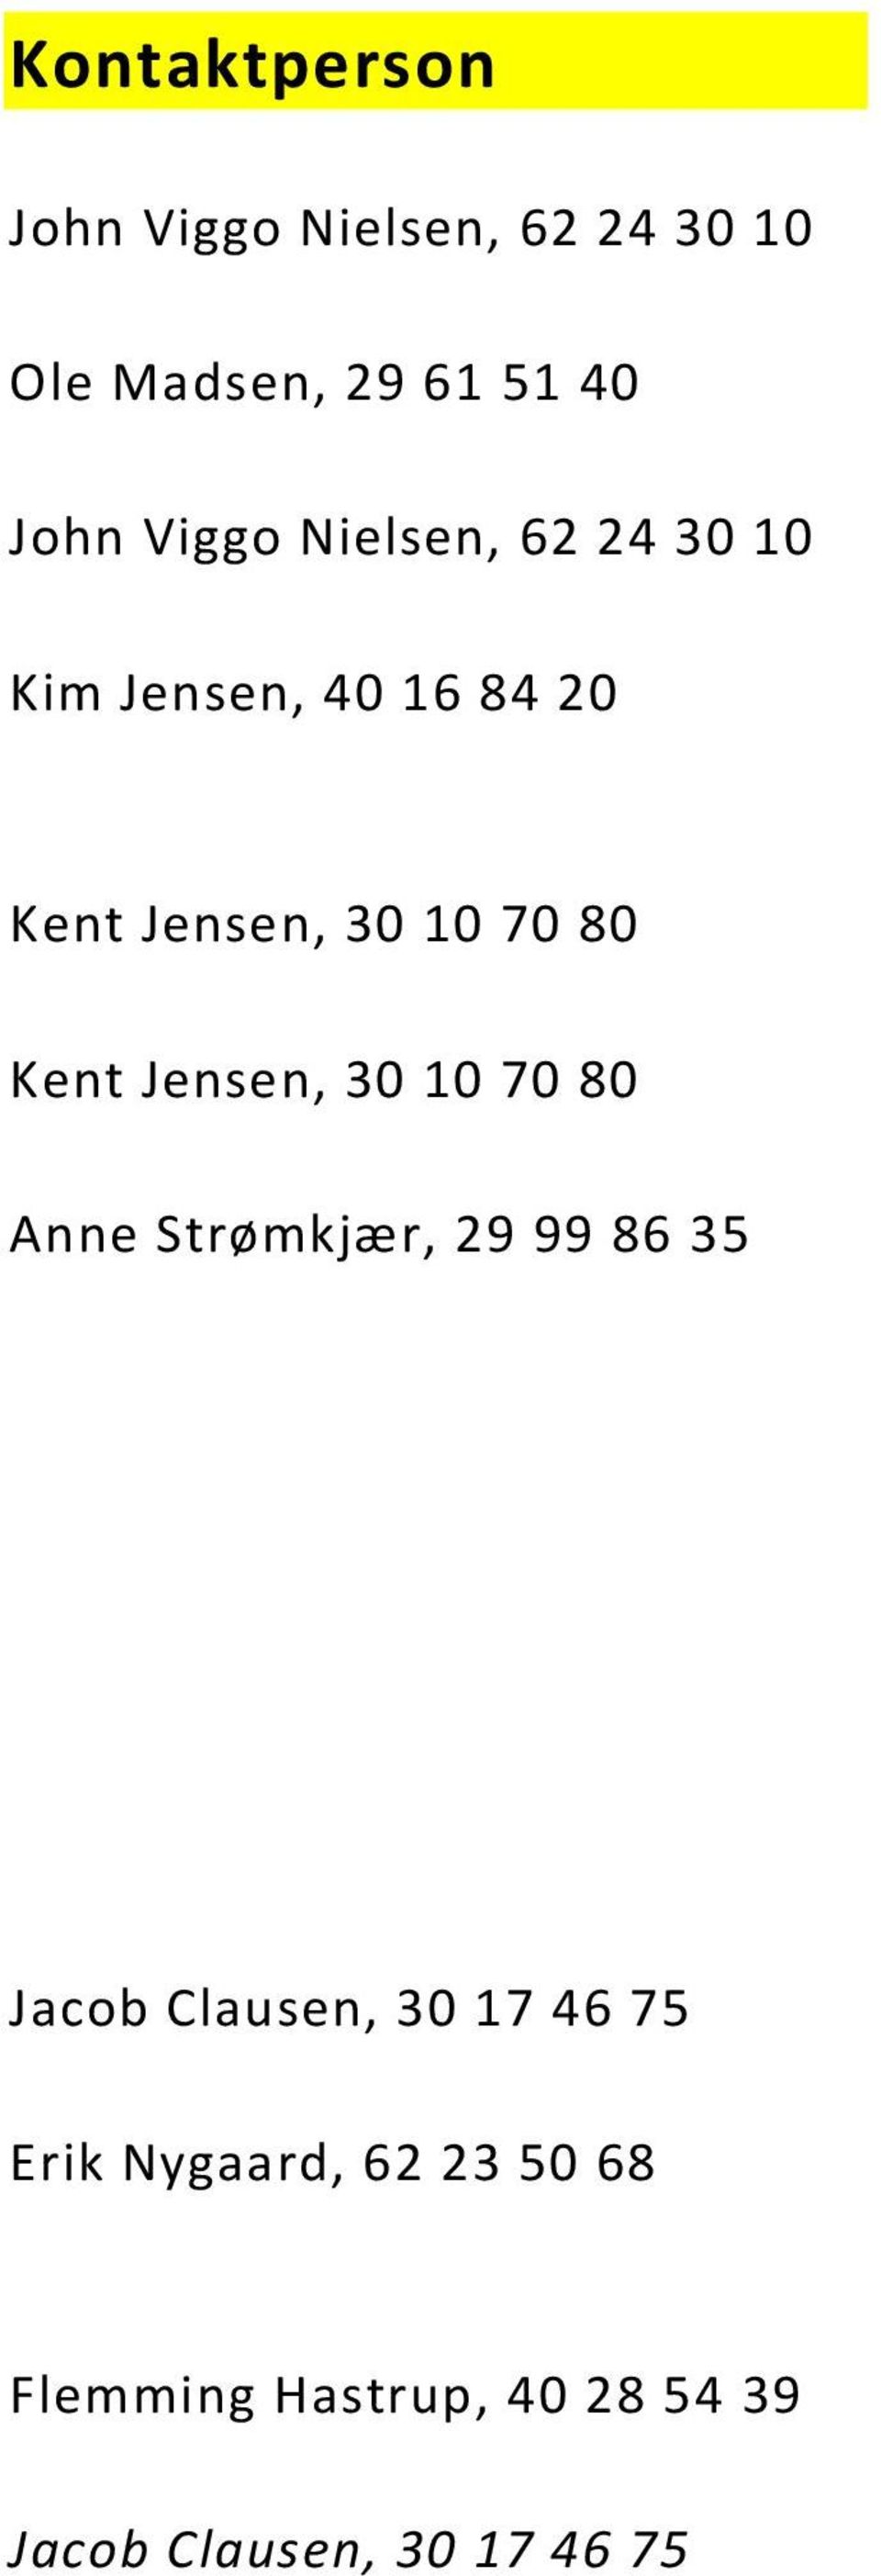 Kent Jensen, 30 10 70 80 Anne Strømkjær, 29 99 86 35 Jacob Clausen, 30 17 46 75 rg